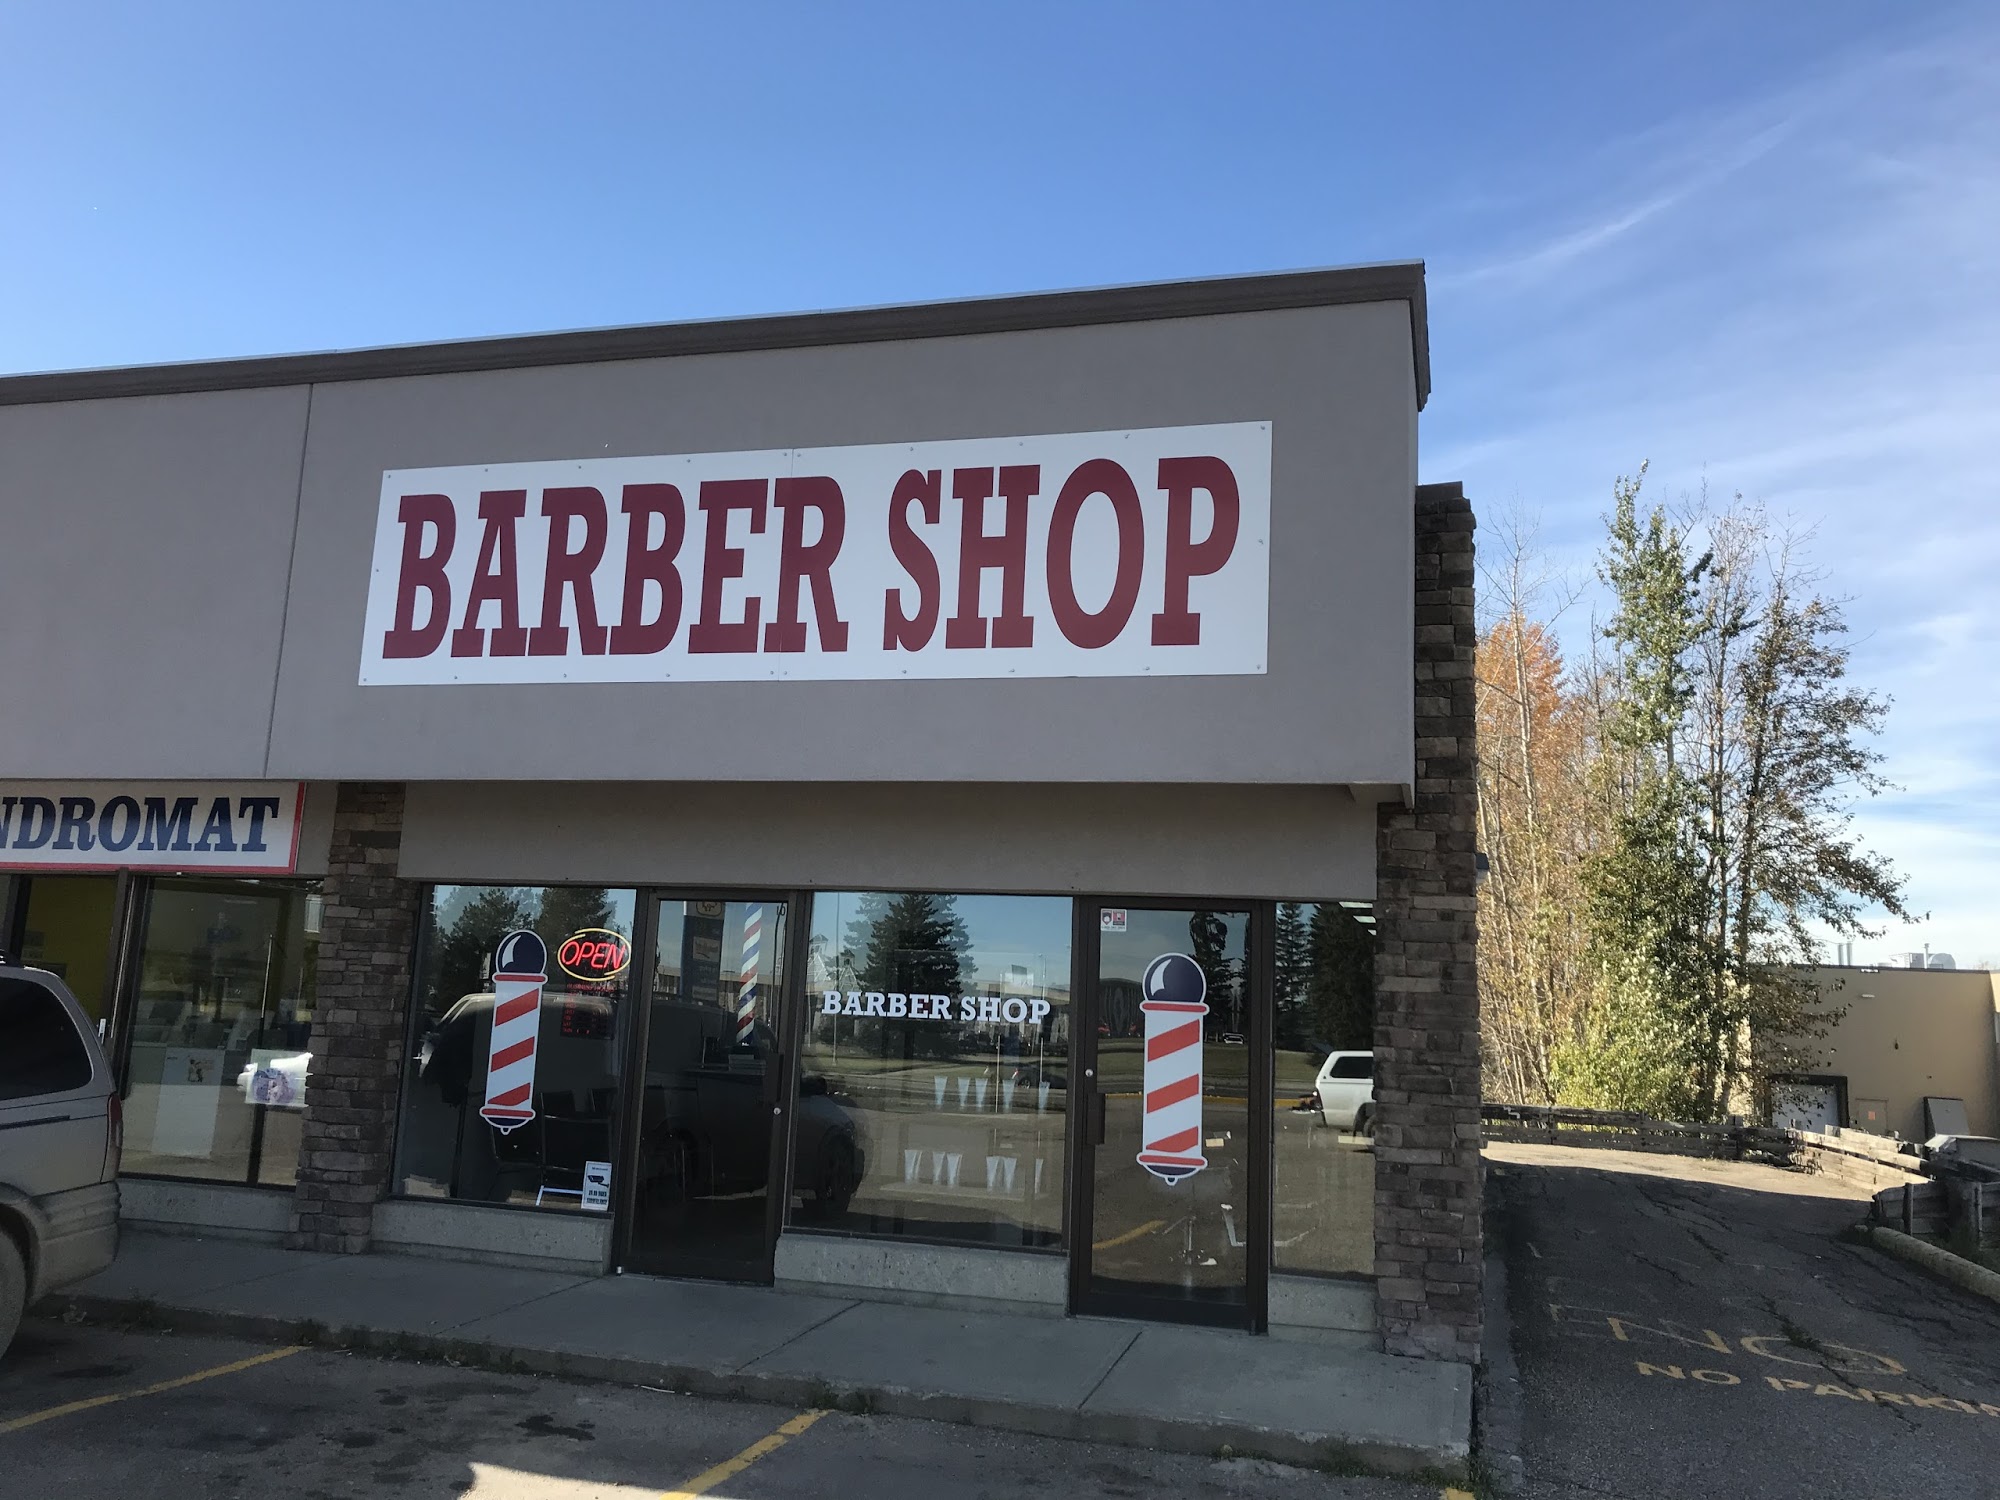 Stony barber shop